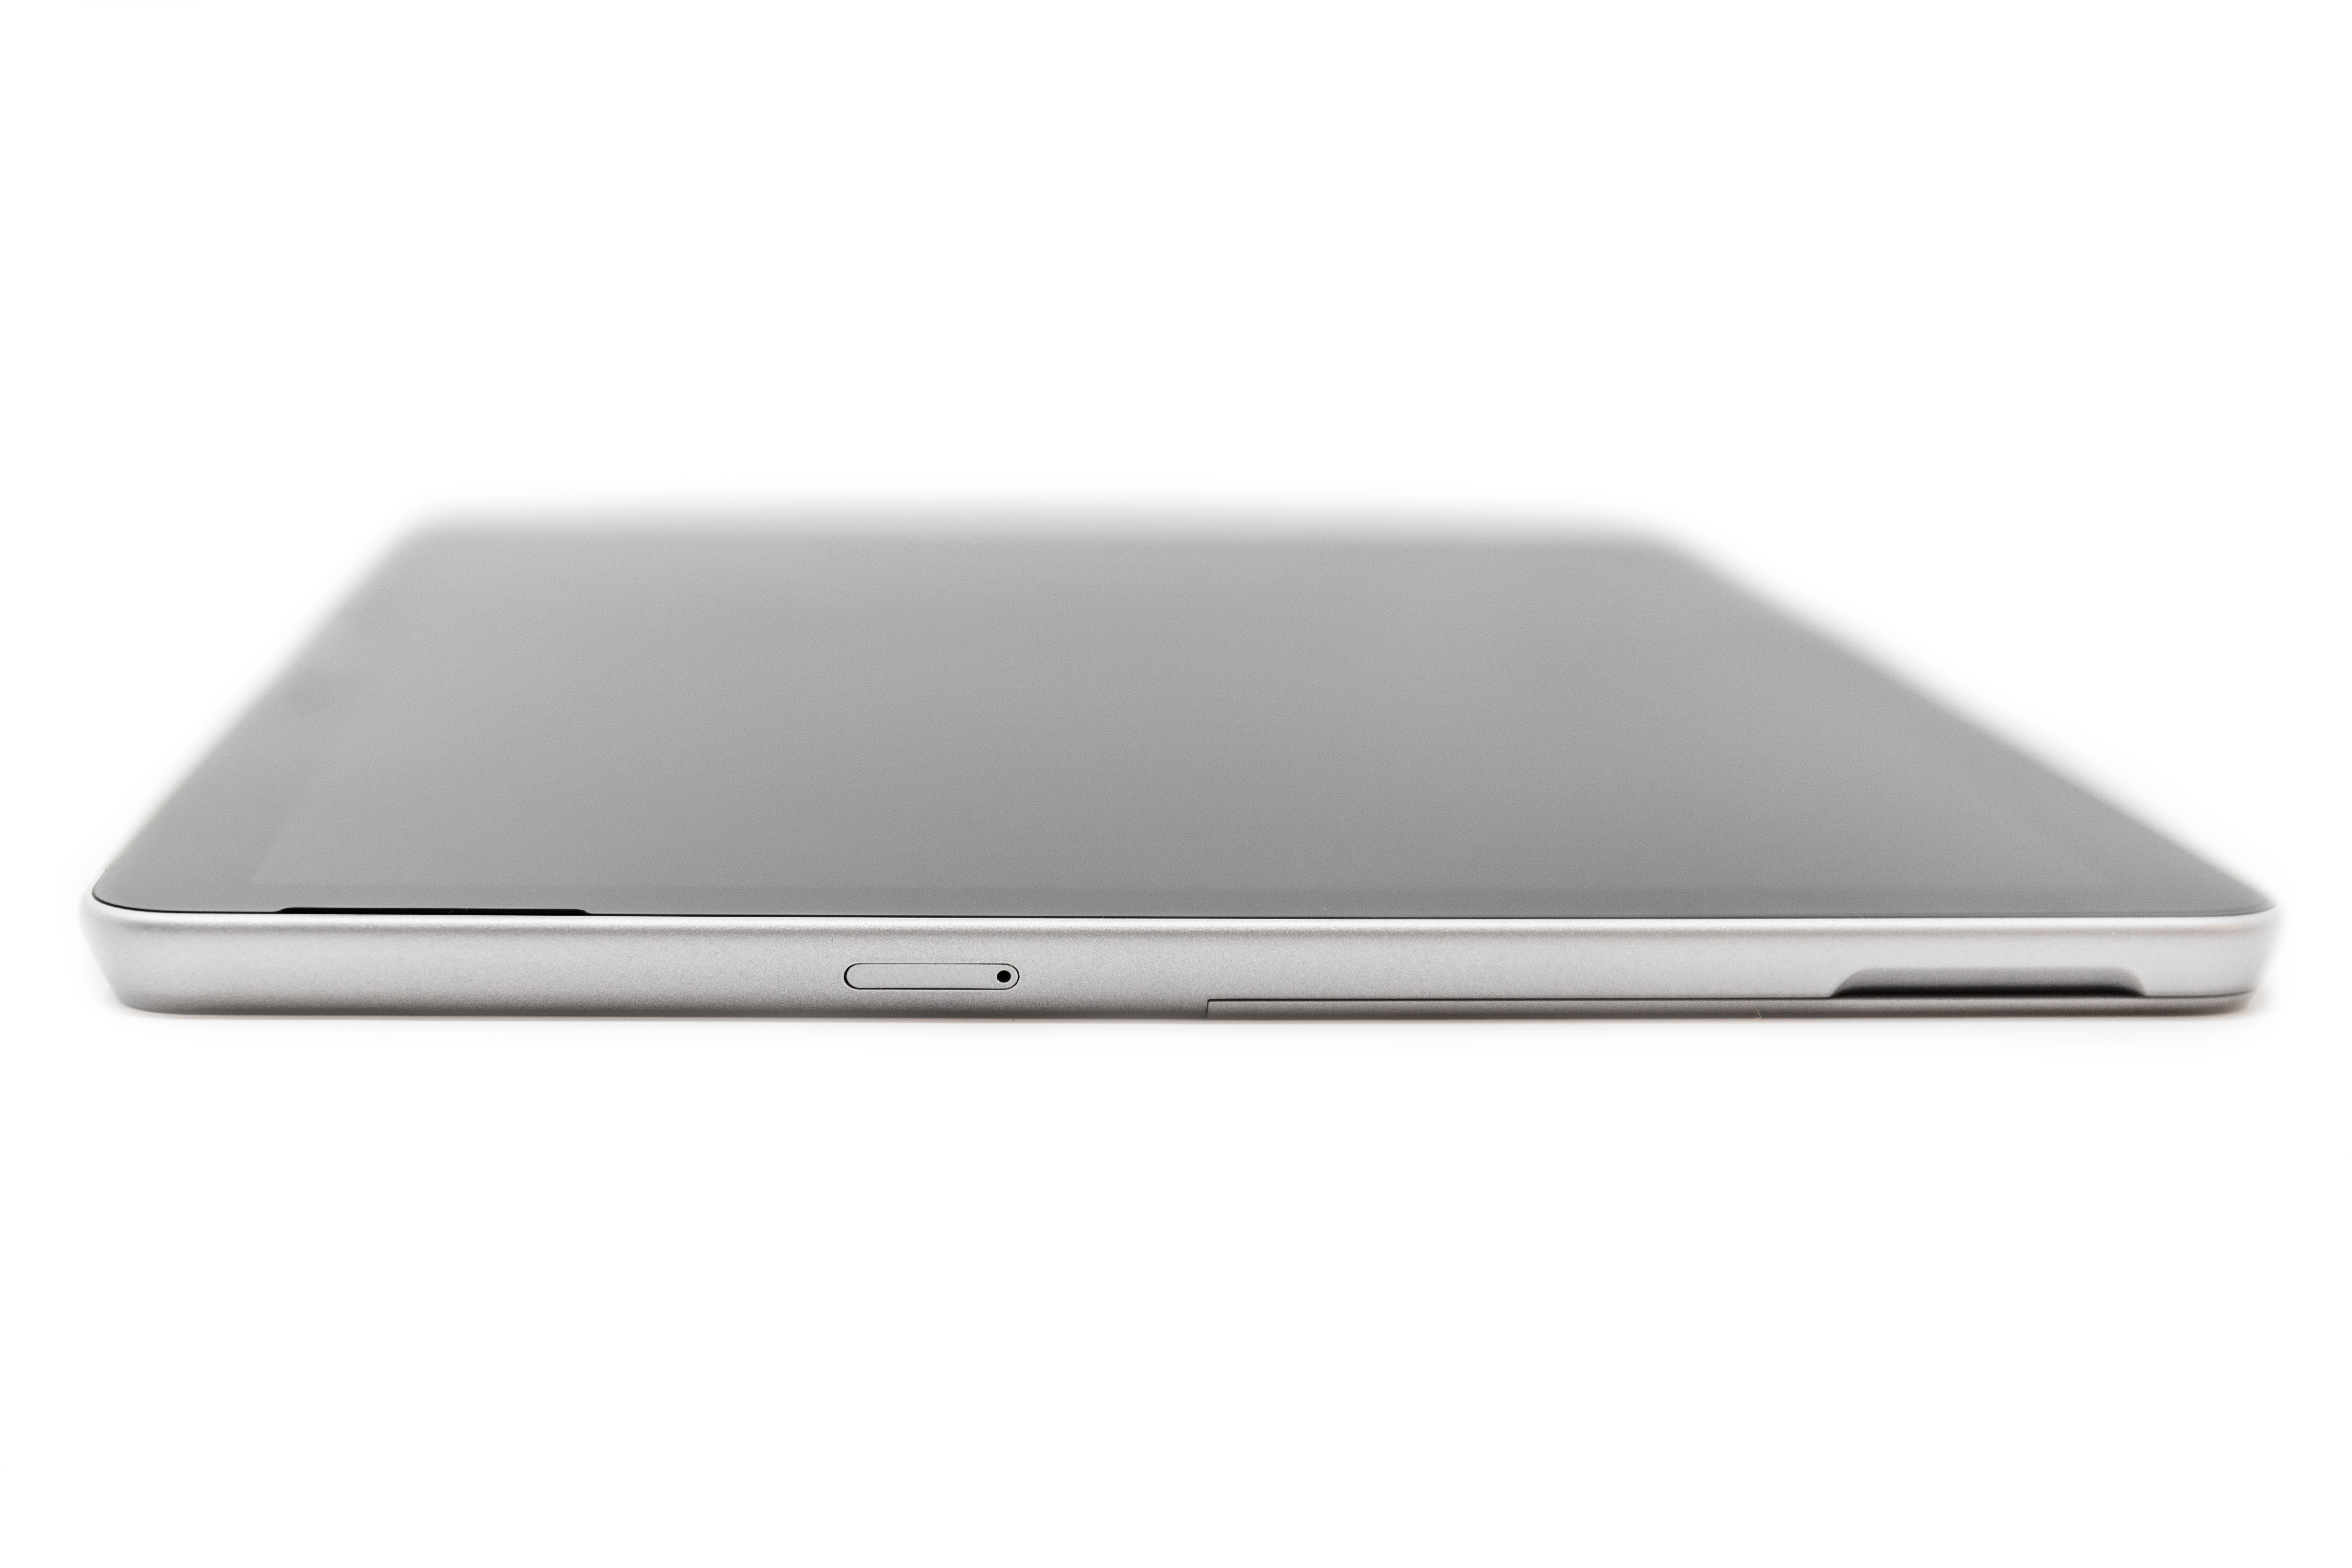 Изображение устройства Surface, на которое отображается слот карта SIM-карты.